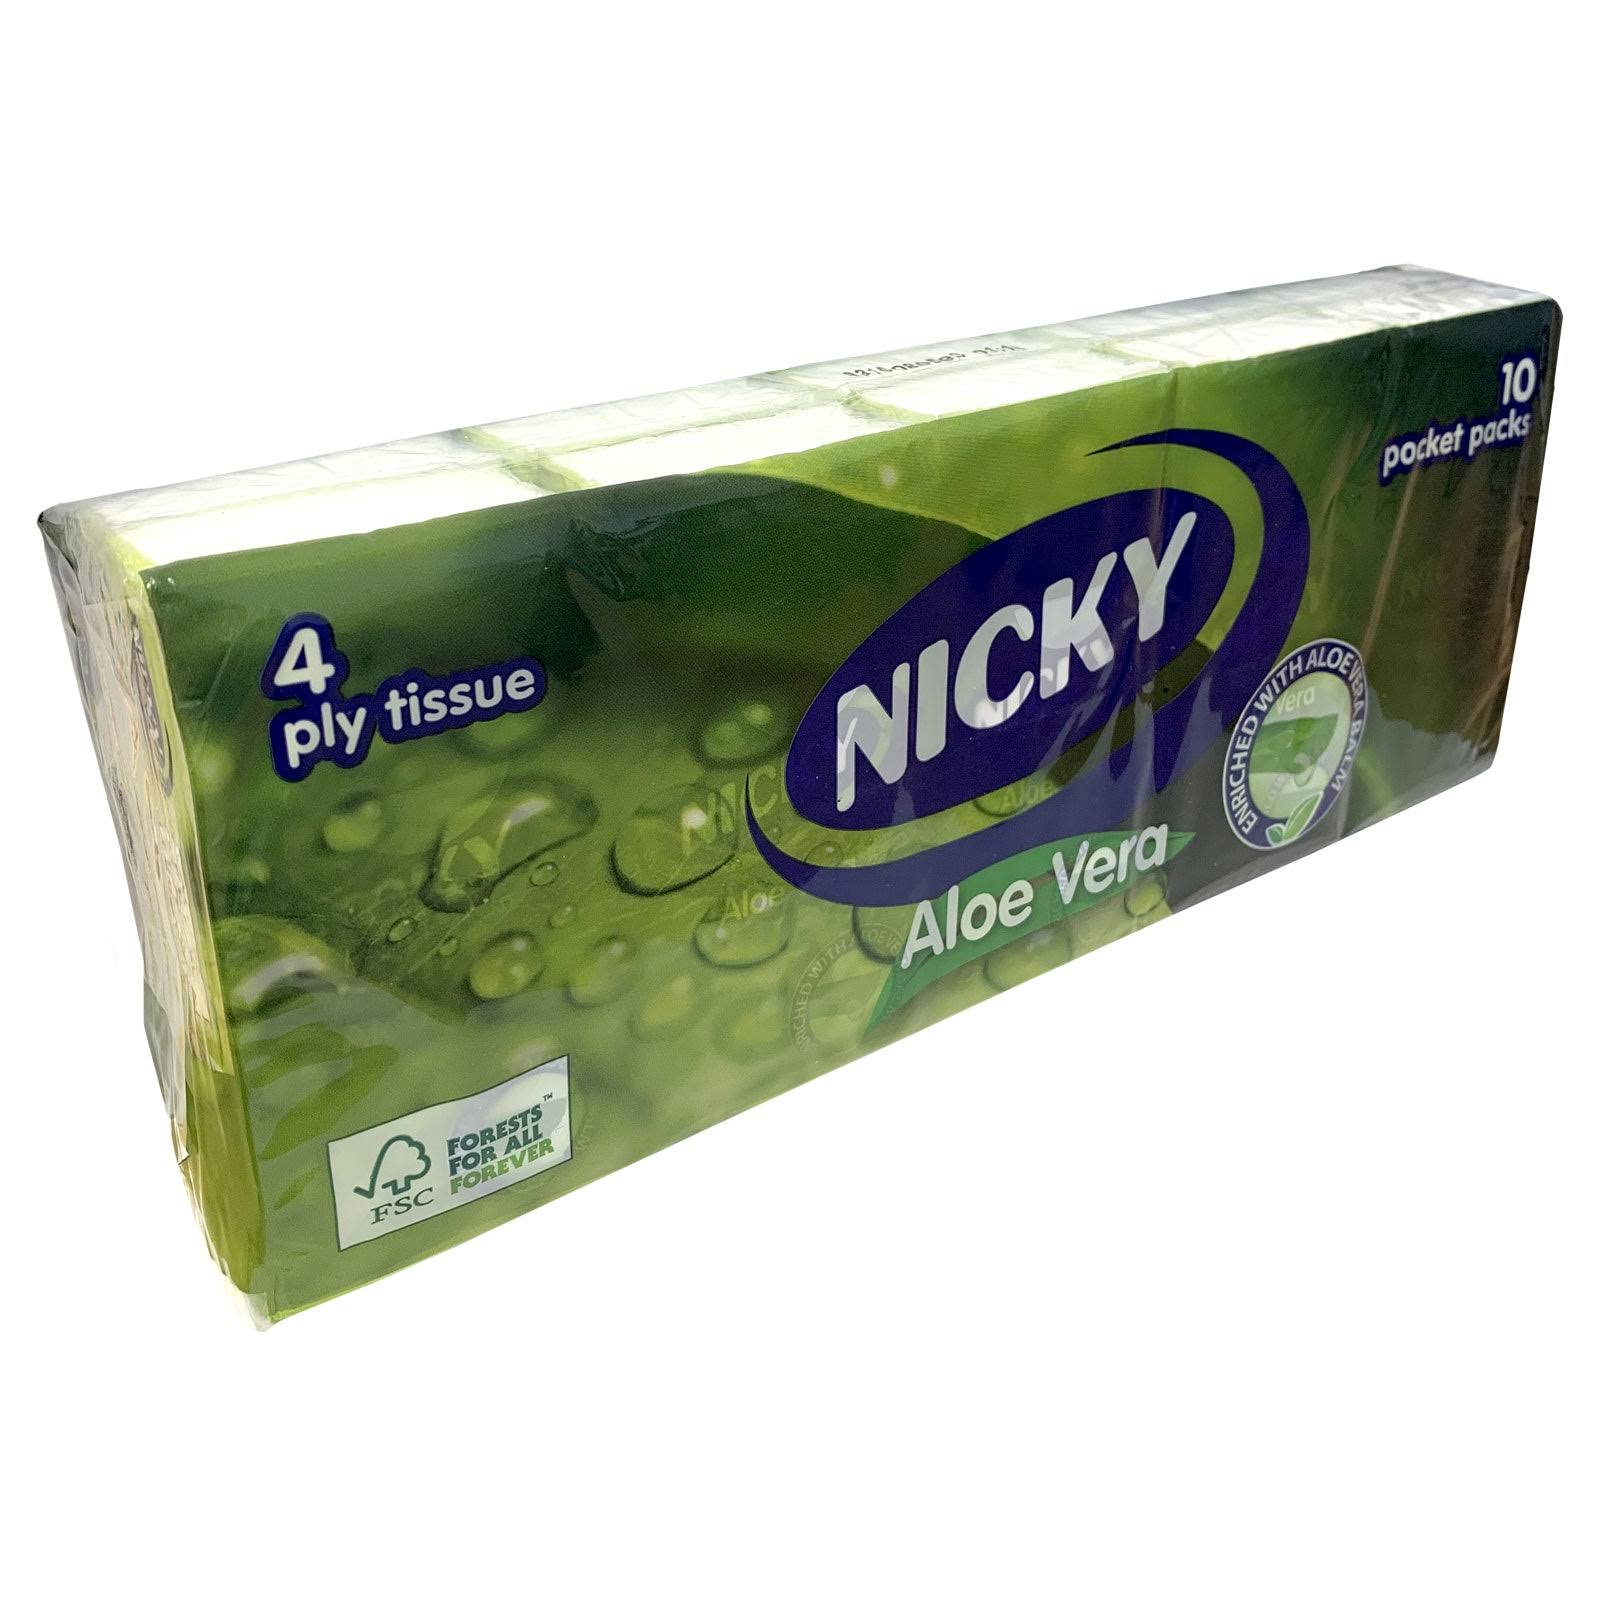 Nicky Aloe Vera Tissue - 4 Ply, 10pk